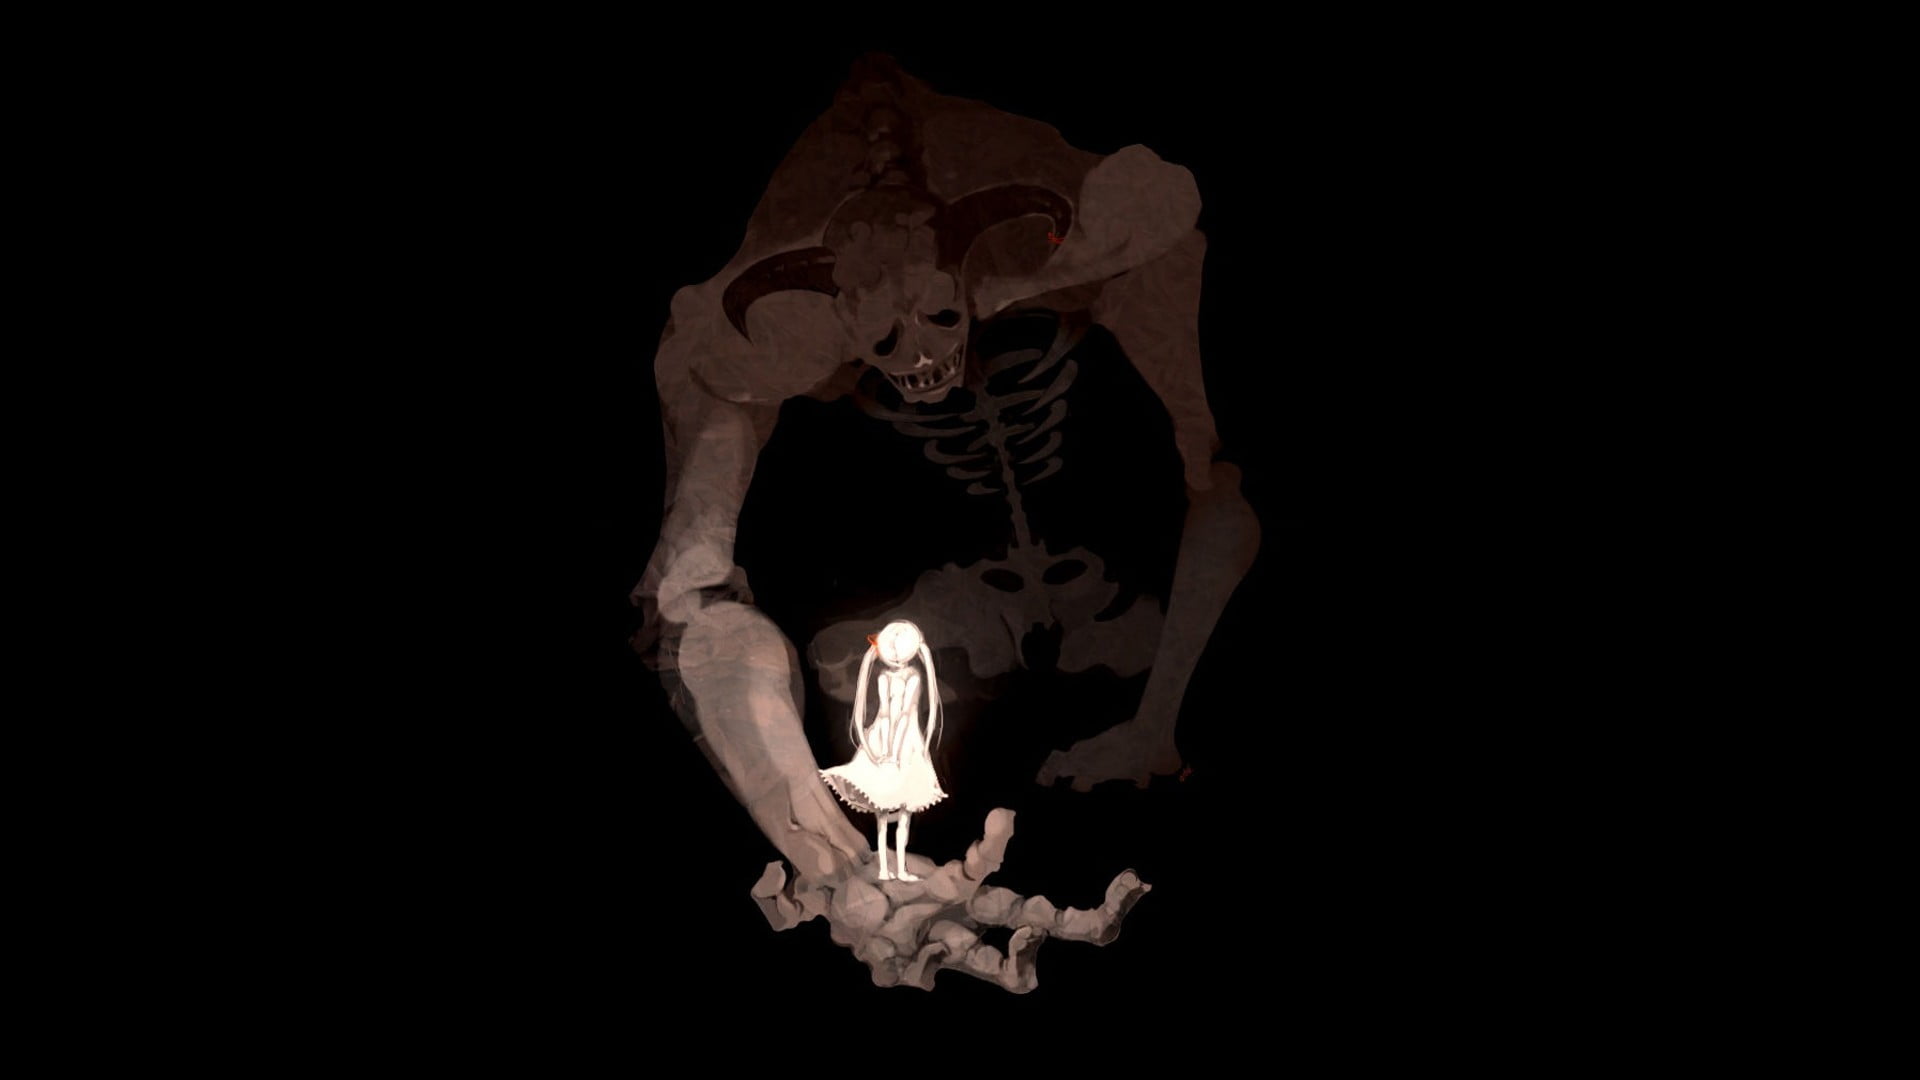 girl standing on giants hand illustration, artwork, demon, black background